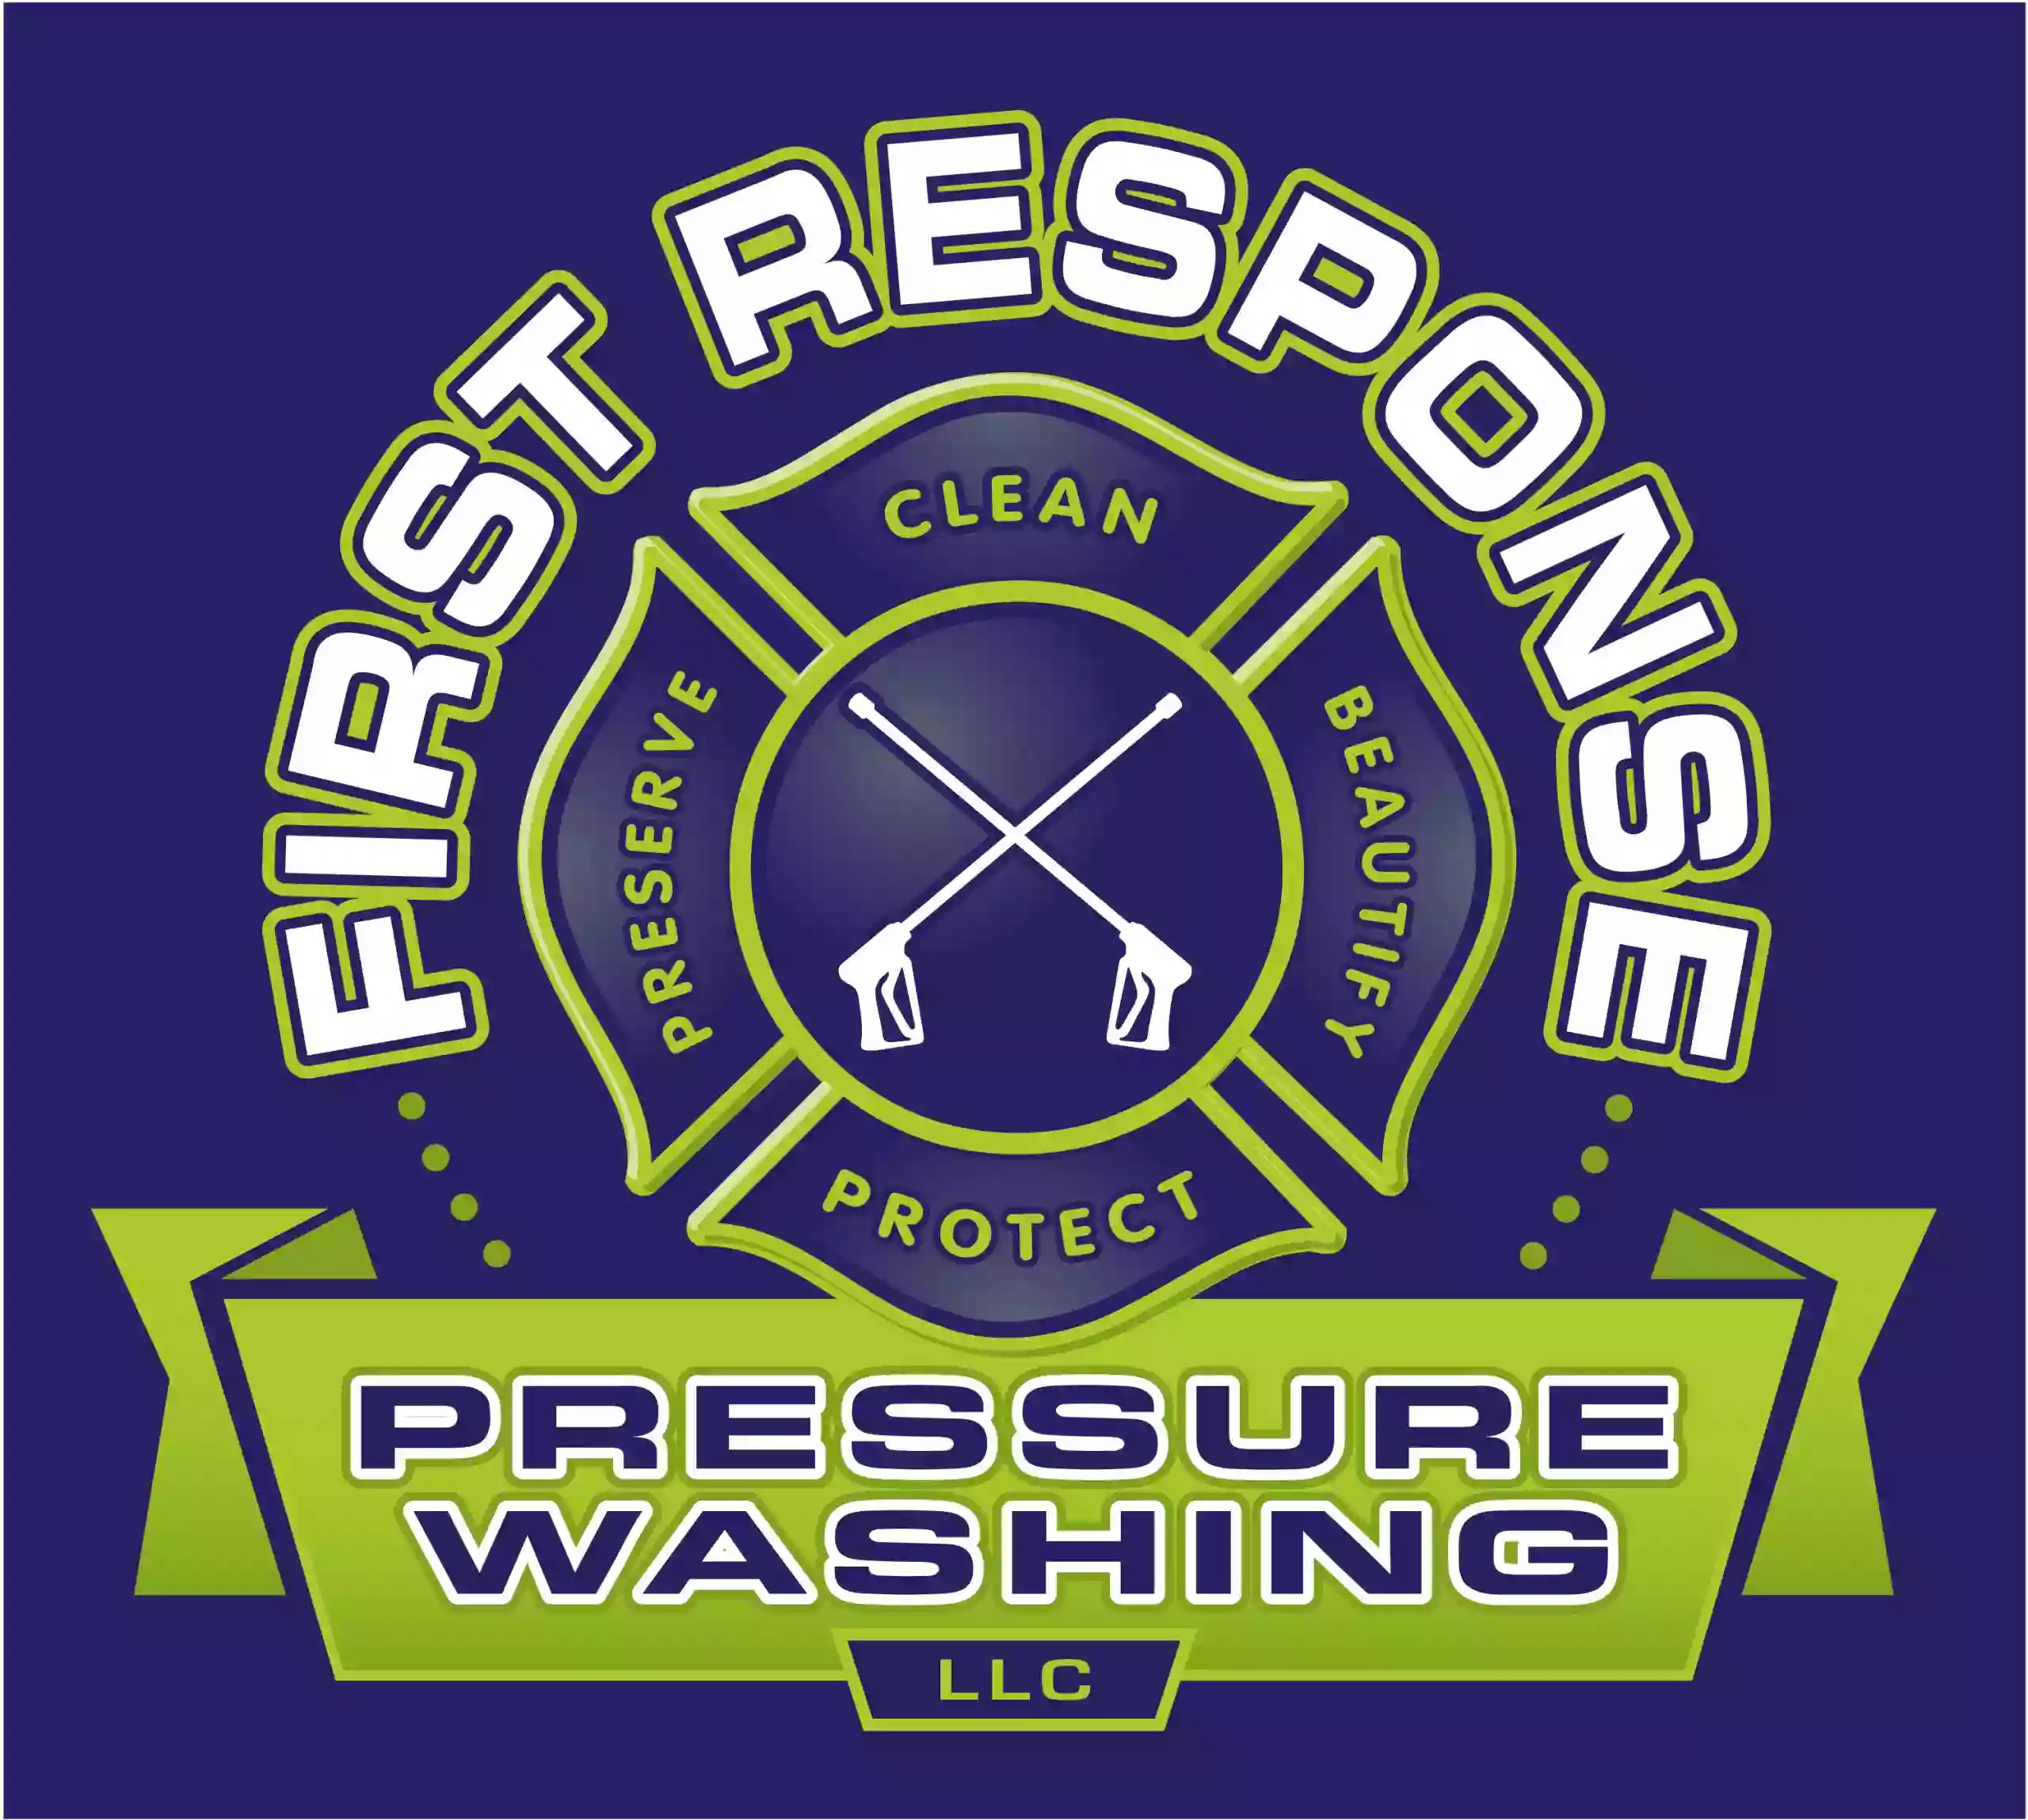 First Response Pressure Washing, LLC